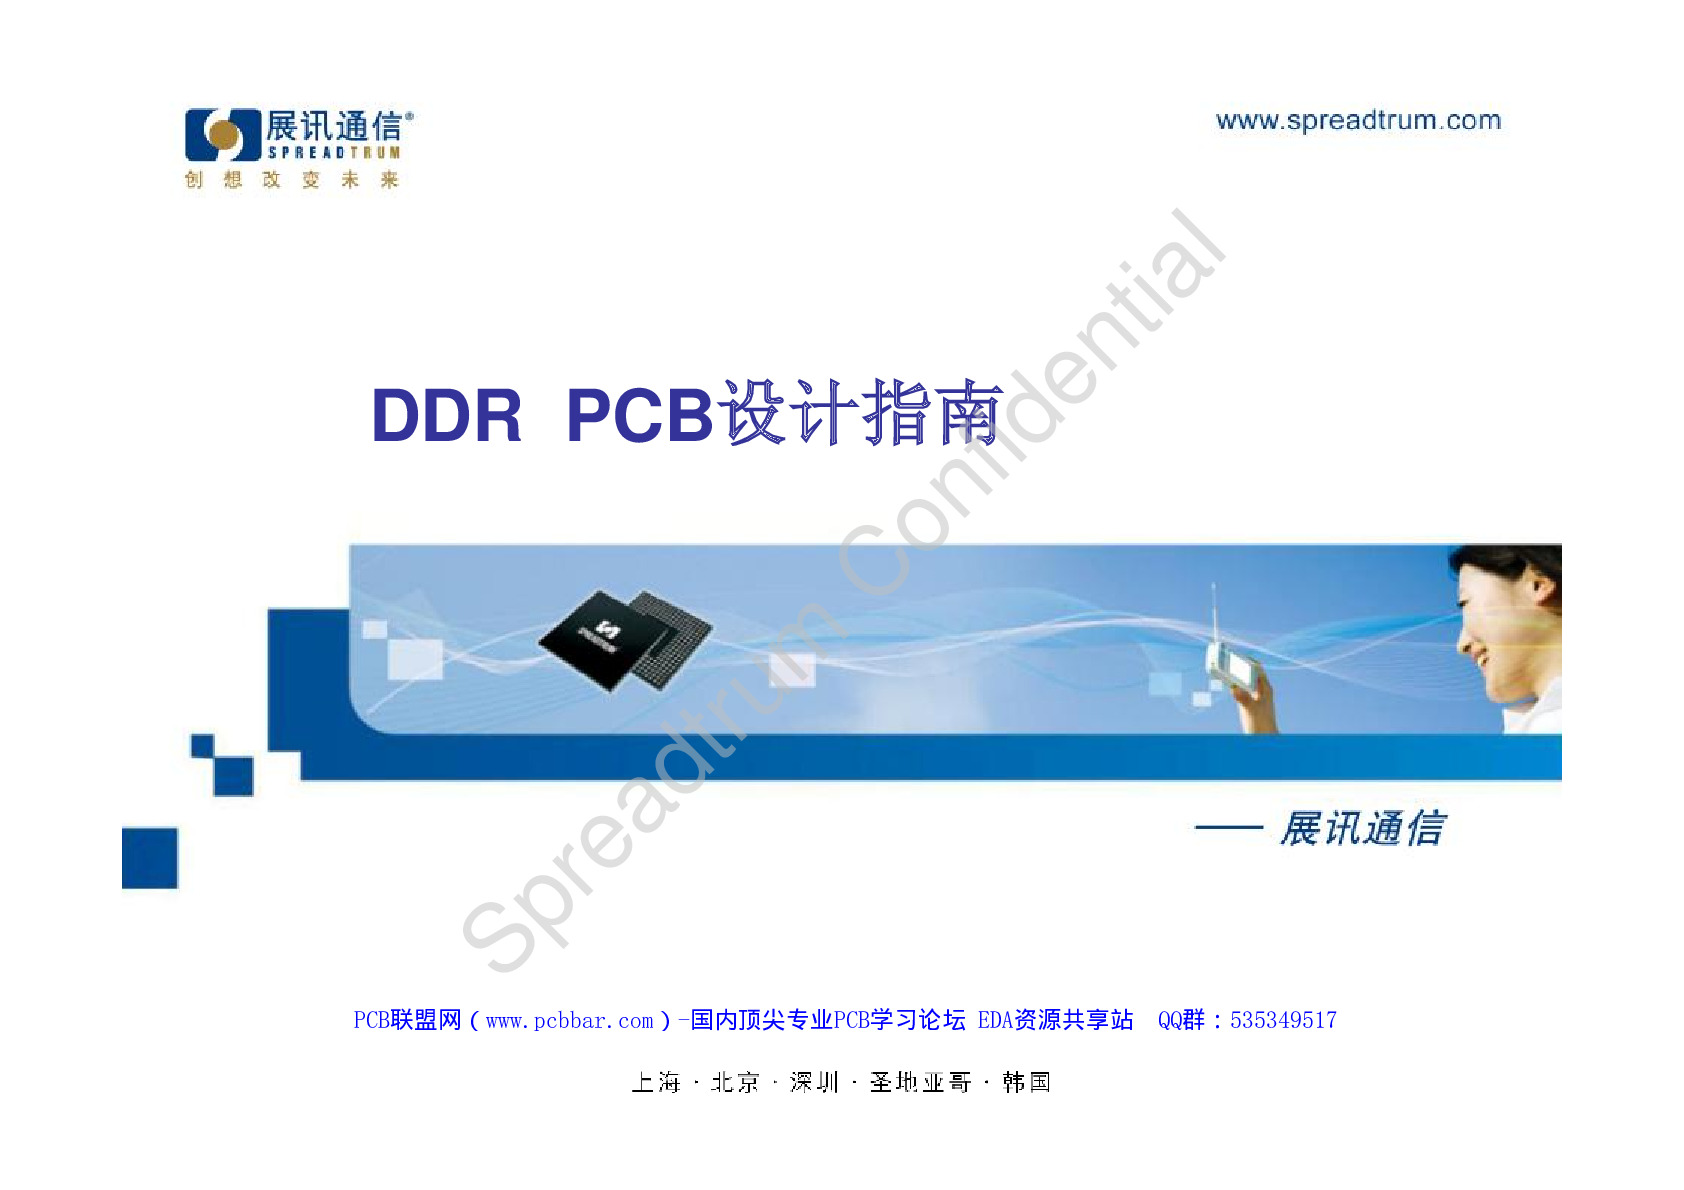 DDR-PCB设计指南-V1.0.0